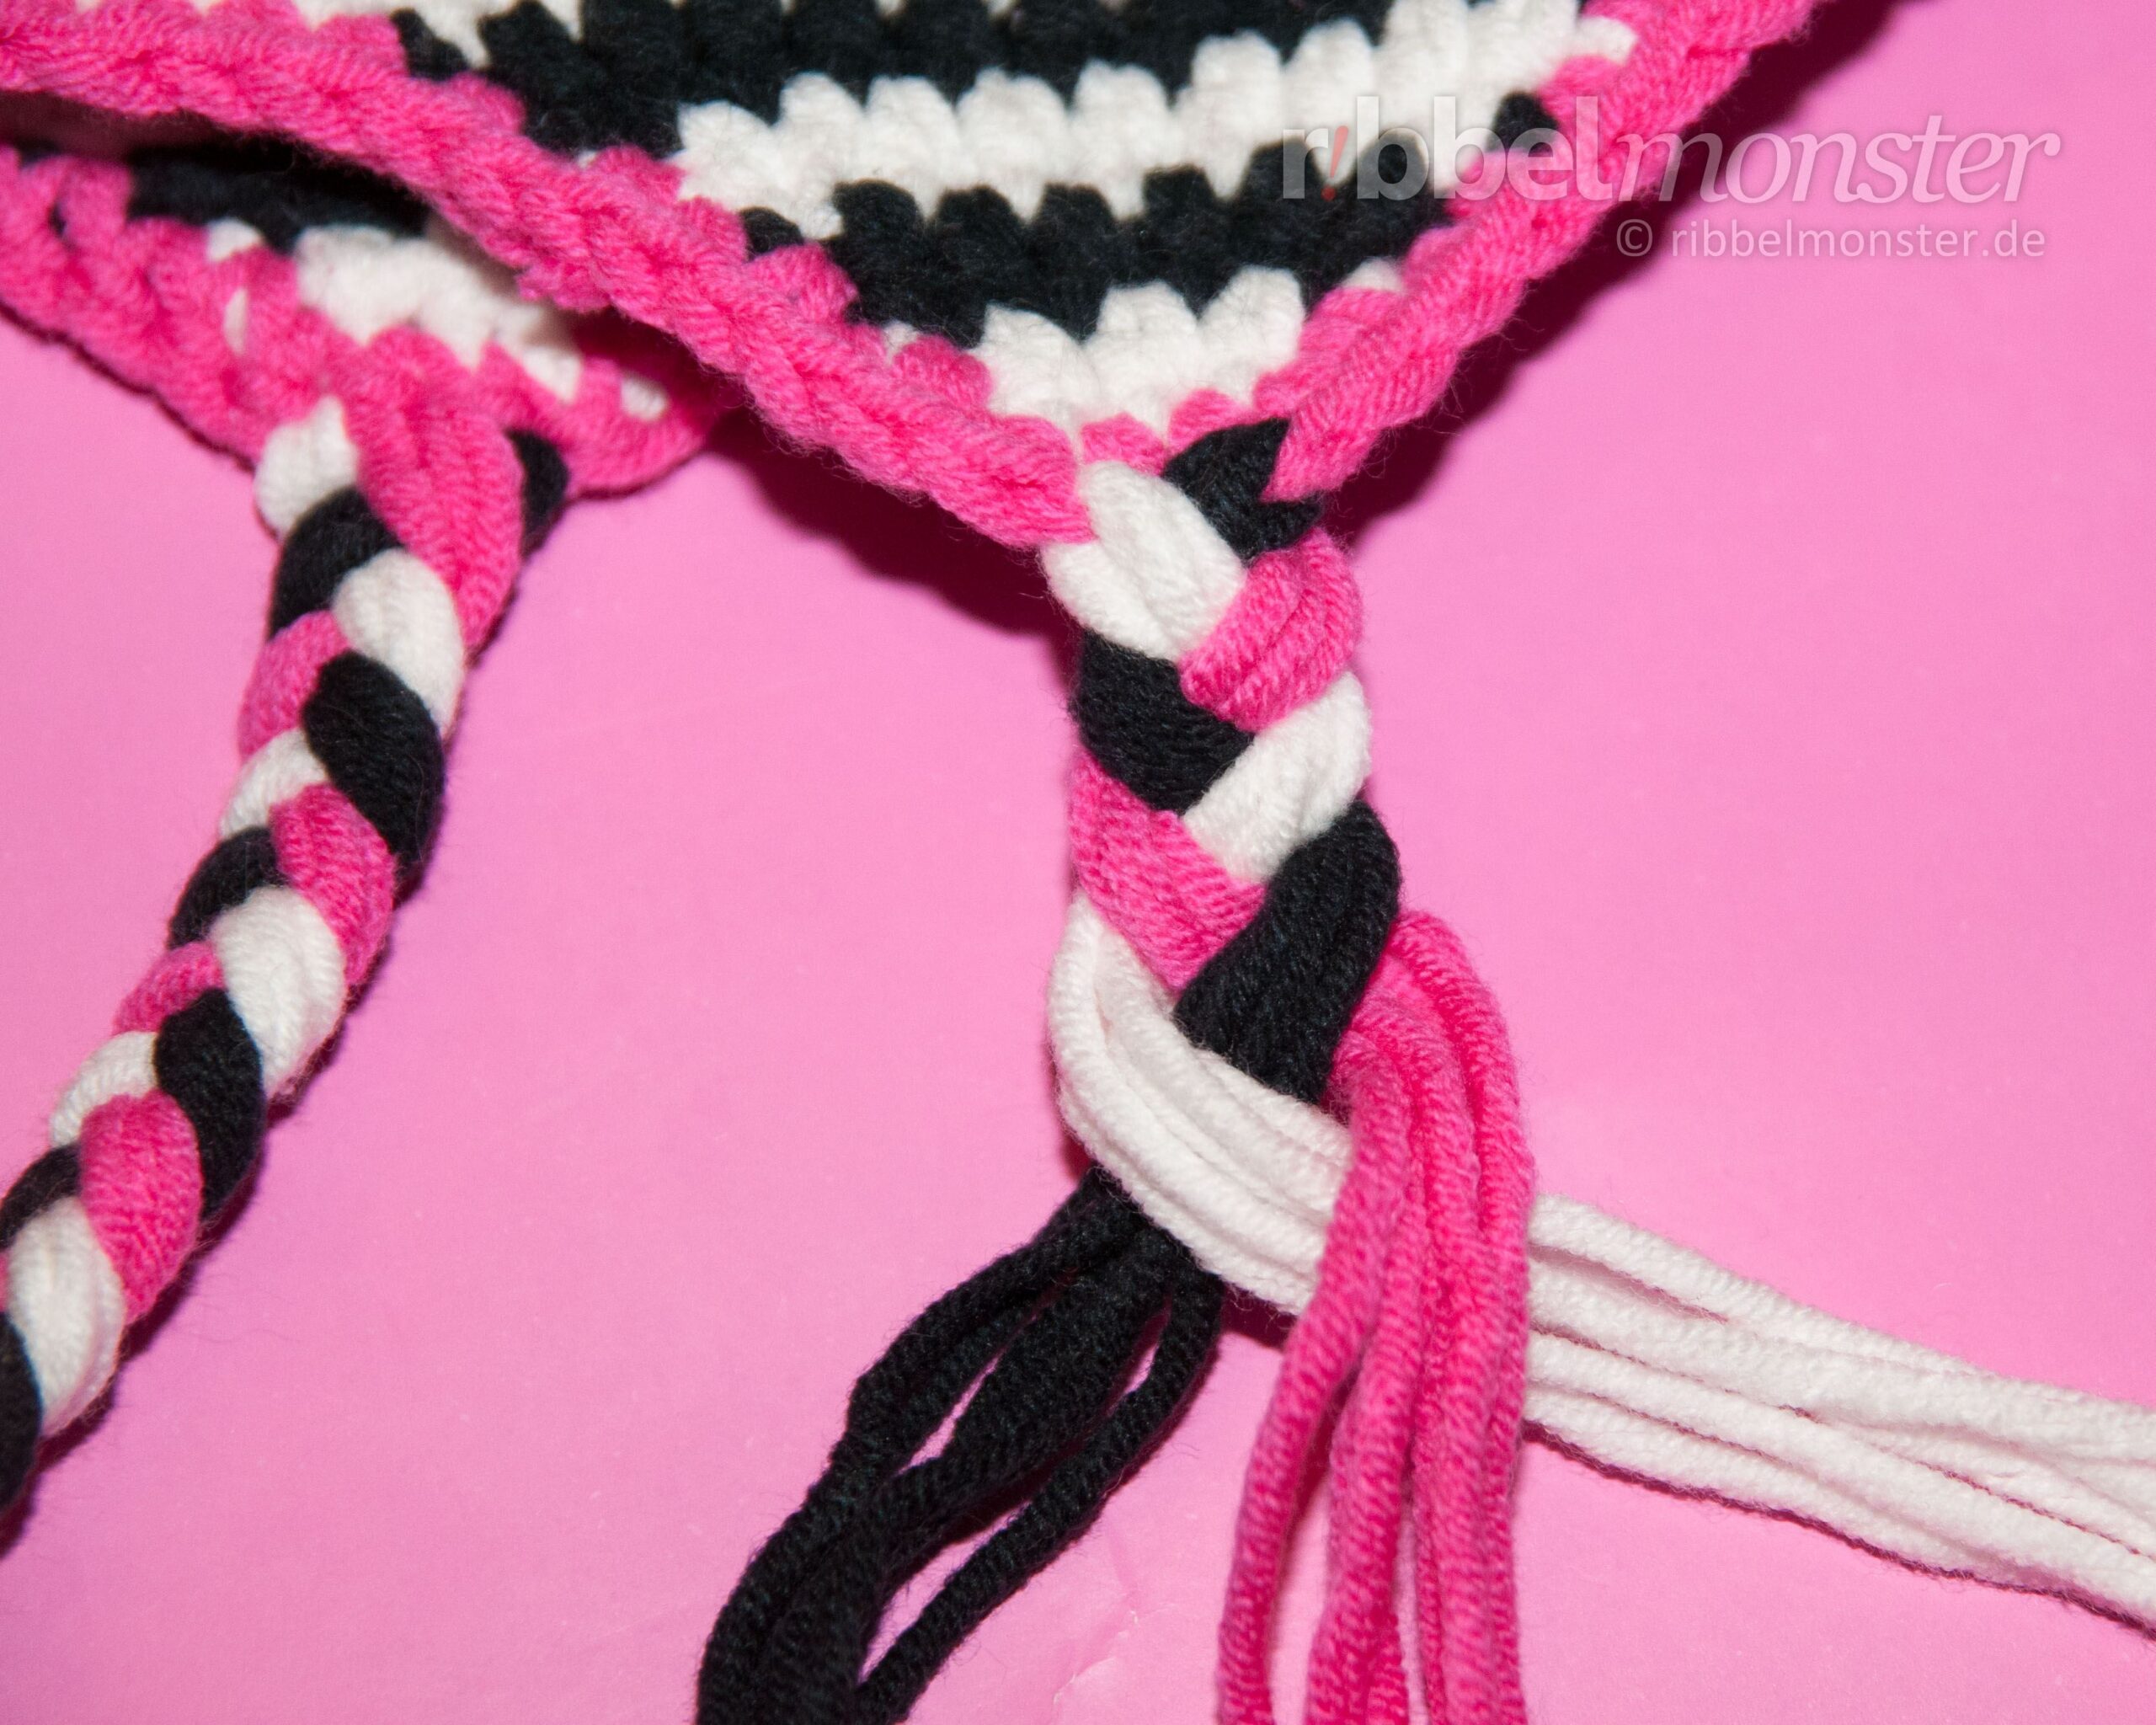 Crochet Hats – Tie Braids to Ear Flaps